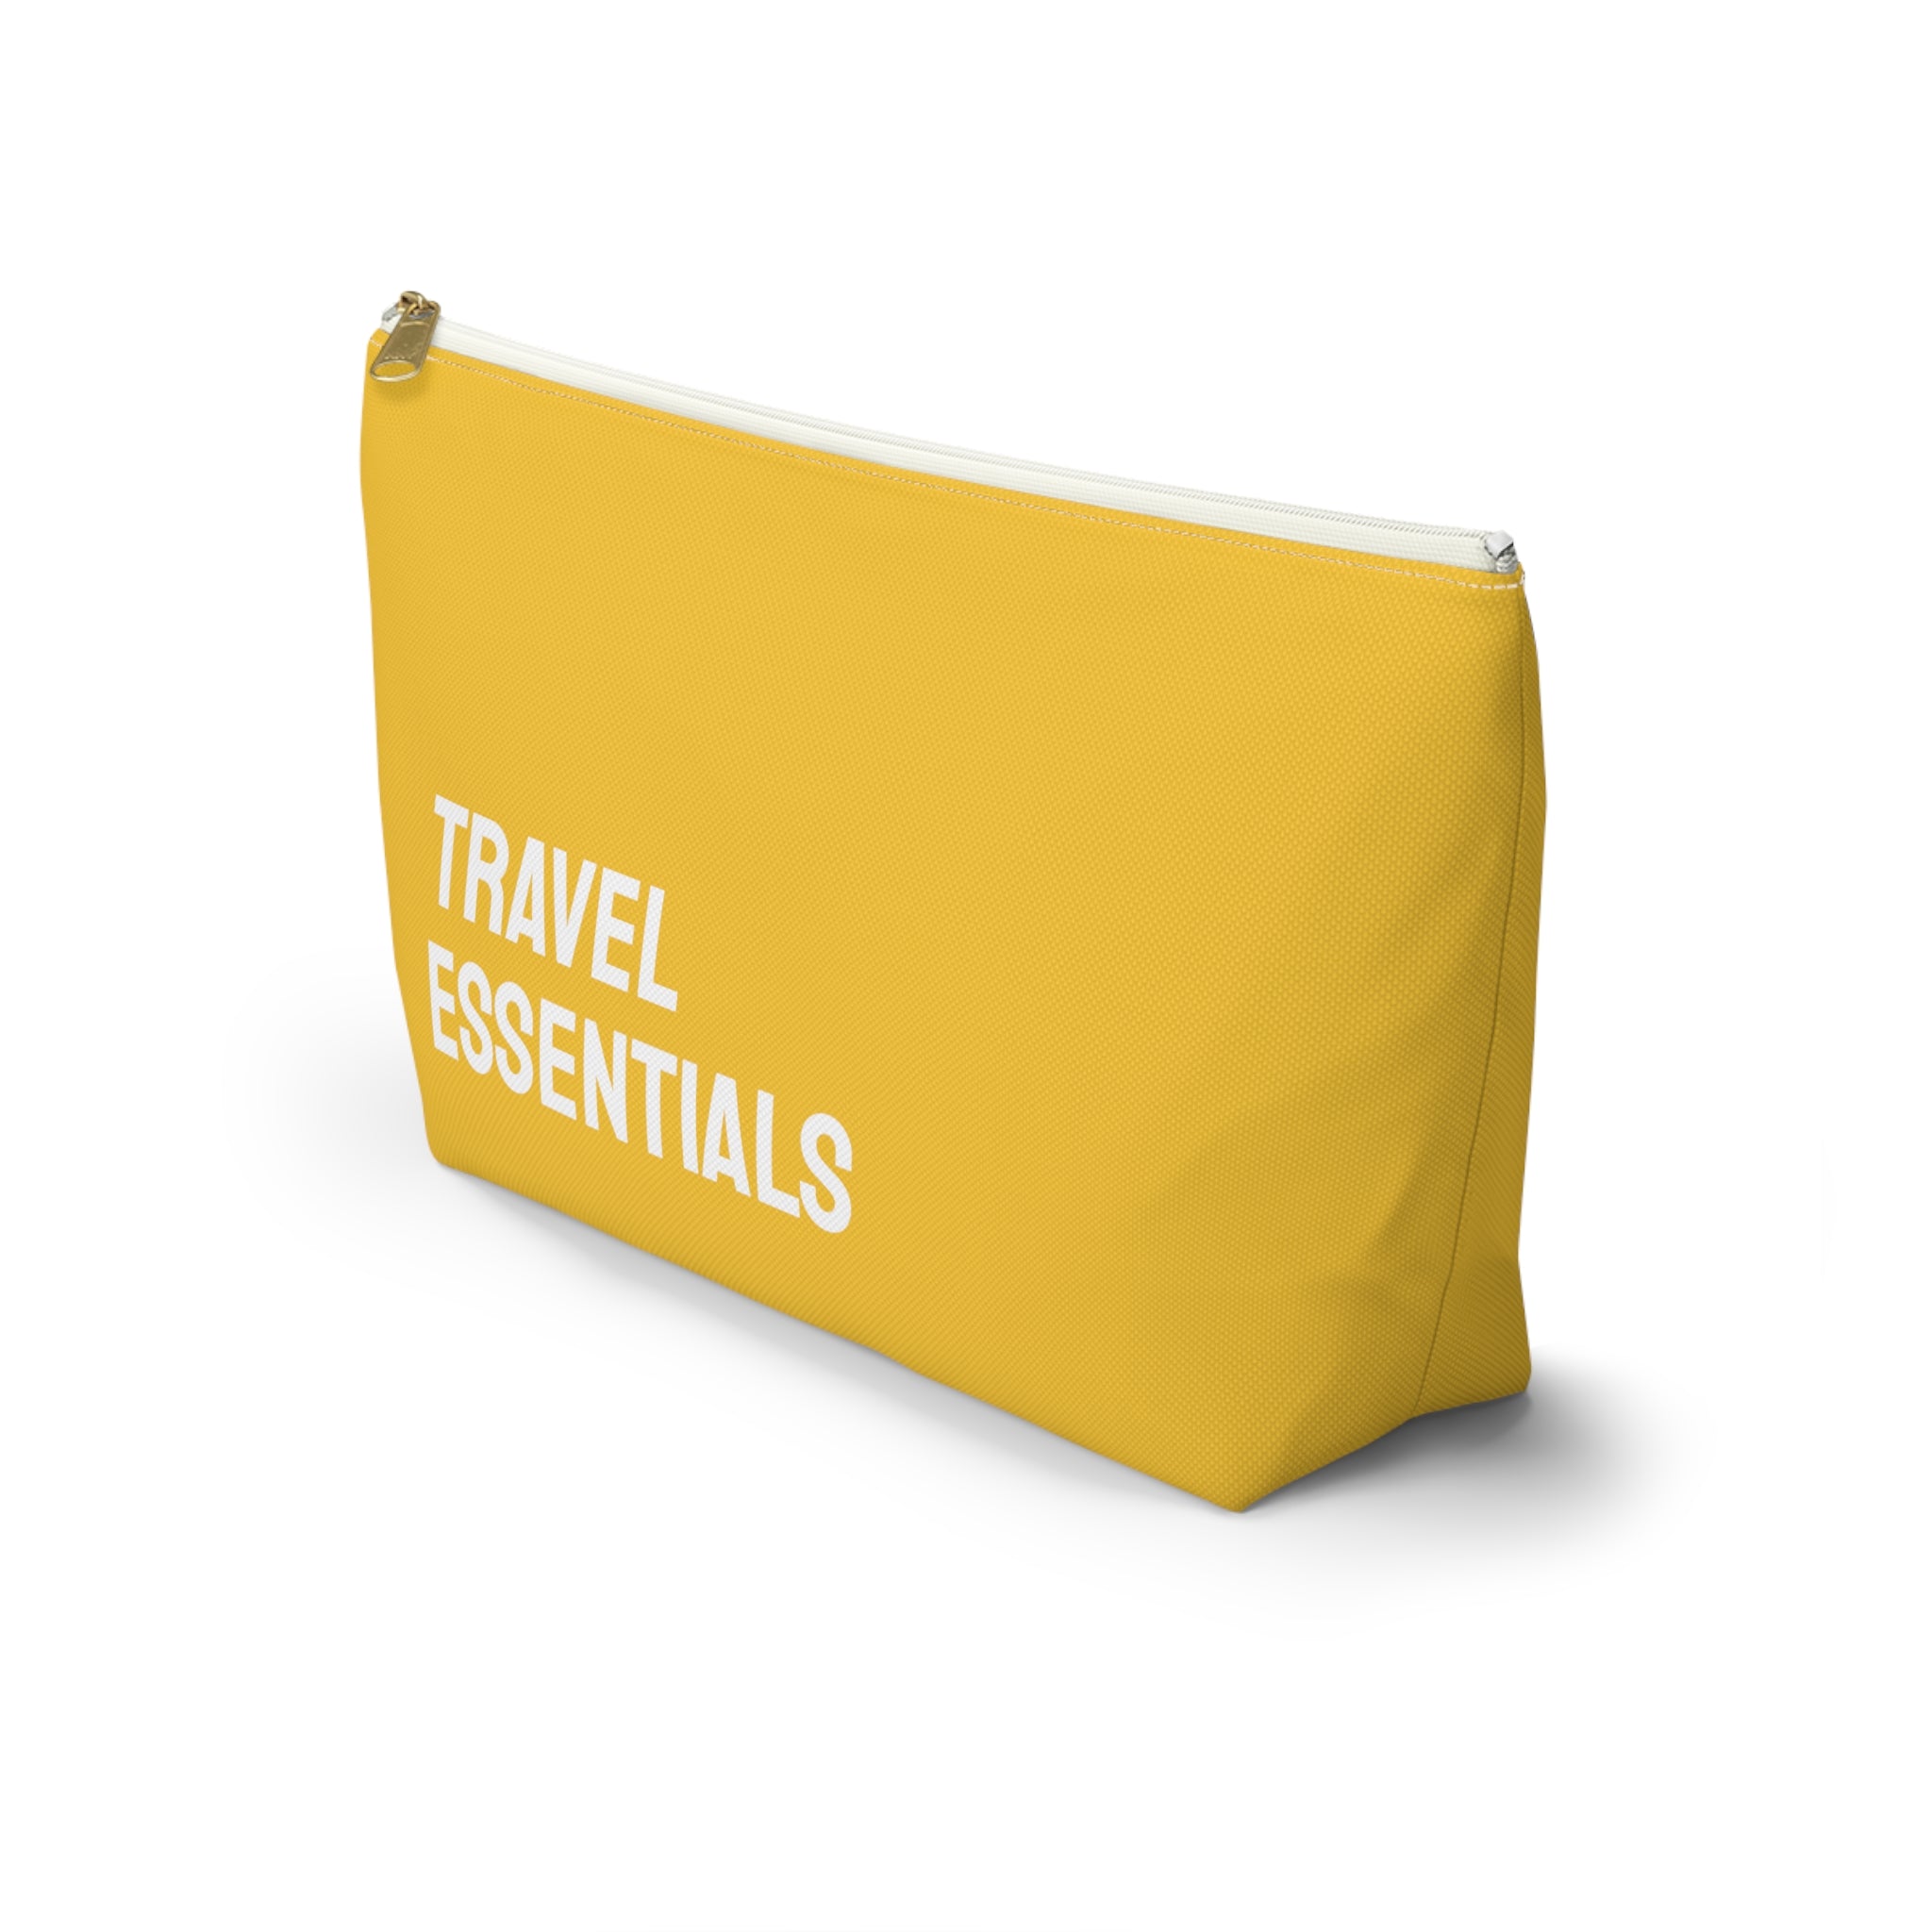 Travel essentials Pouch (White)